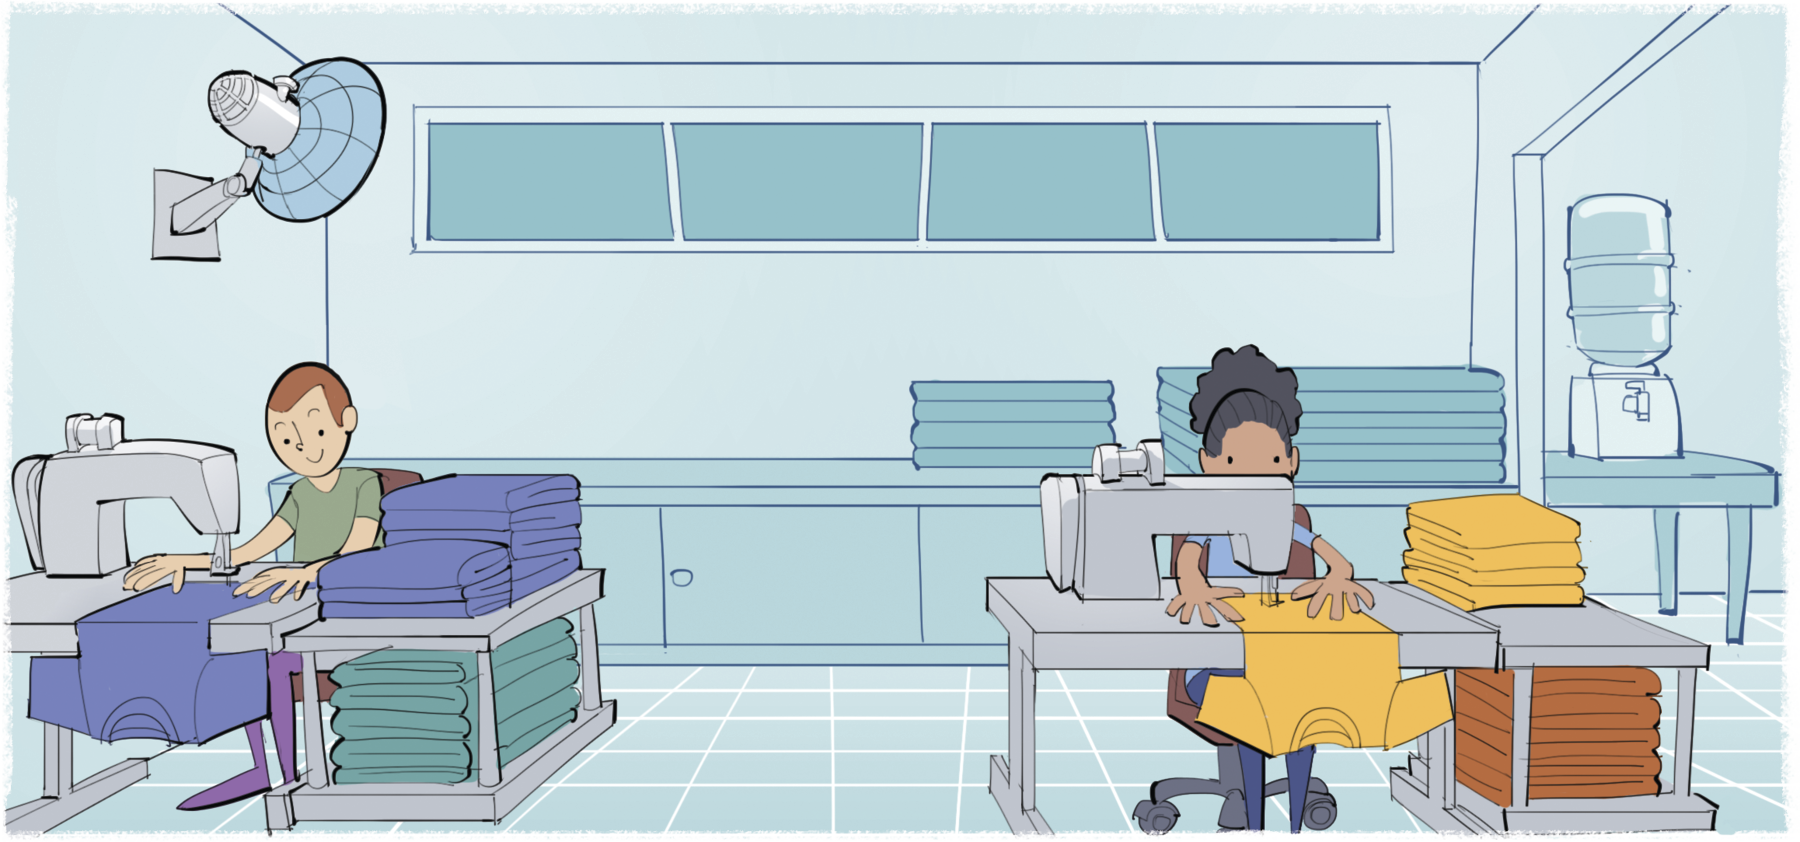 Ilustração. À esquerda, homem sentado à frente de uma máquina de costura. Ele costura camisetas azuis e verdes. À direita, mulher sentada à frente de uma máquina de costura. Ela costura camisetas amarelas e laranjas. Ao fundo, móvel com tecidos, um bebedouro e ventilador no teto.